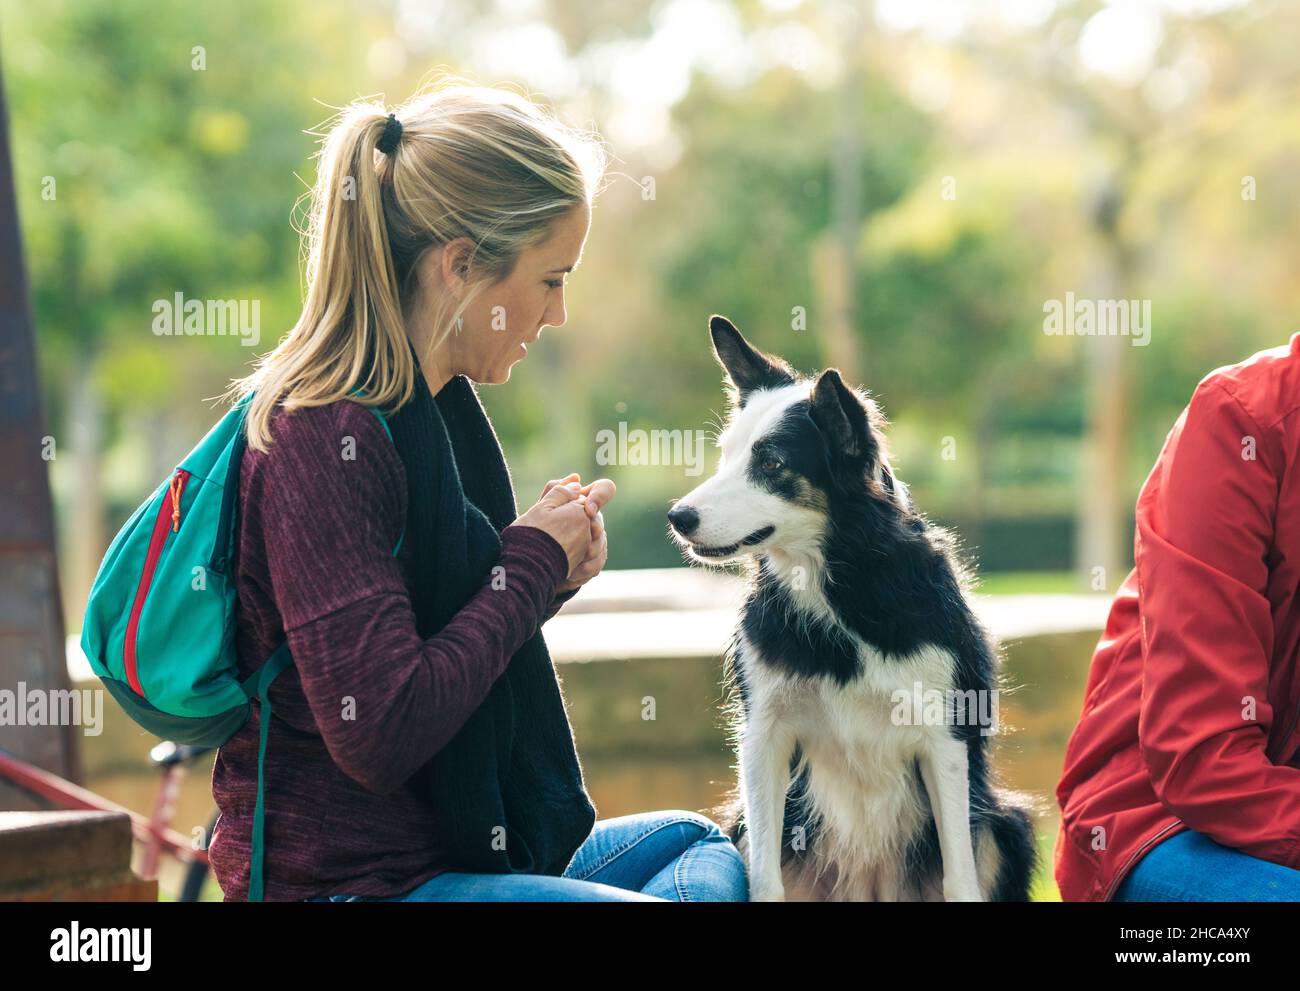 Frau, die in einem Park sitzt und einem Hund eine essbare Freude macht Stockfoto